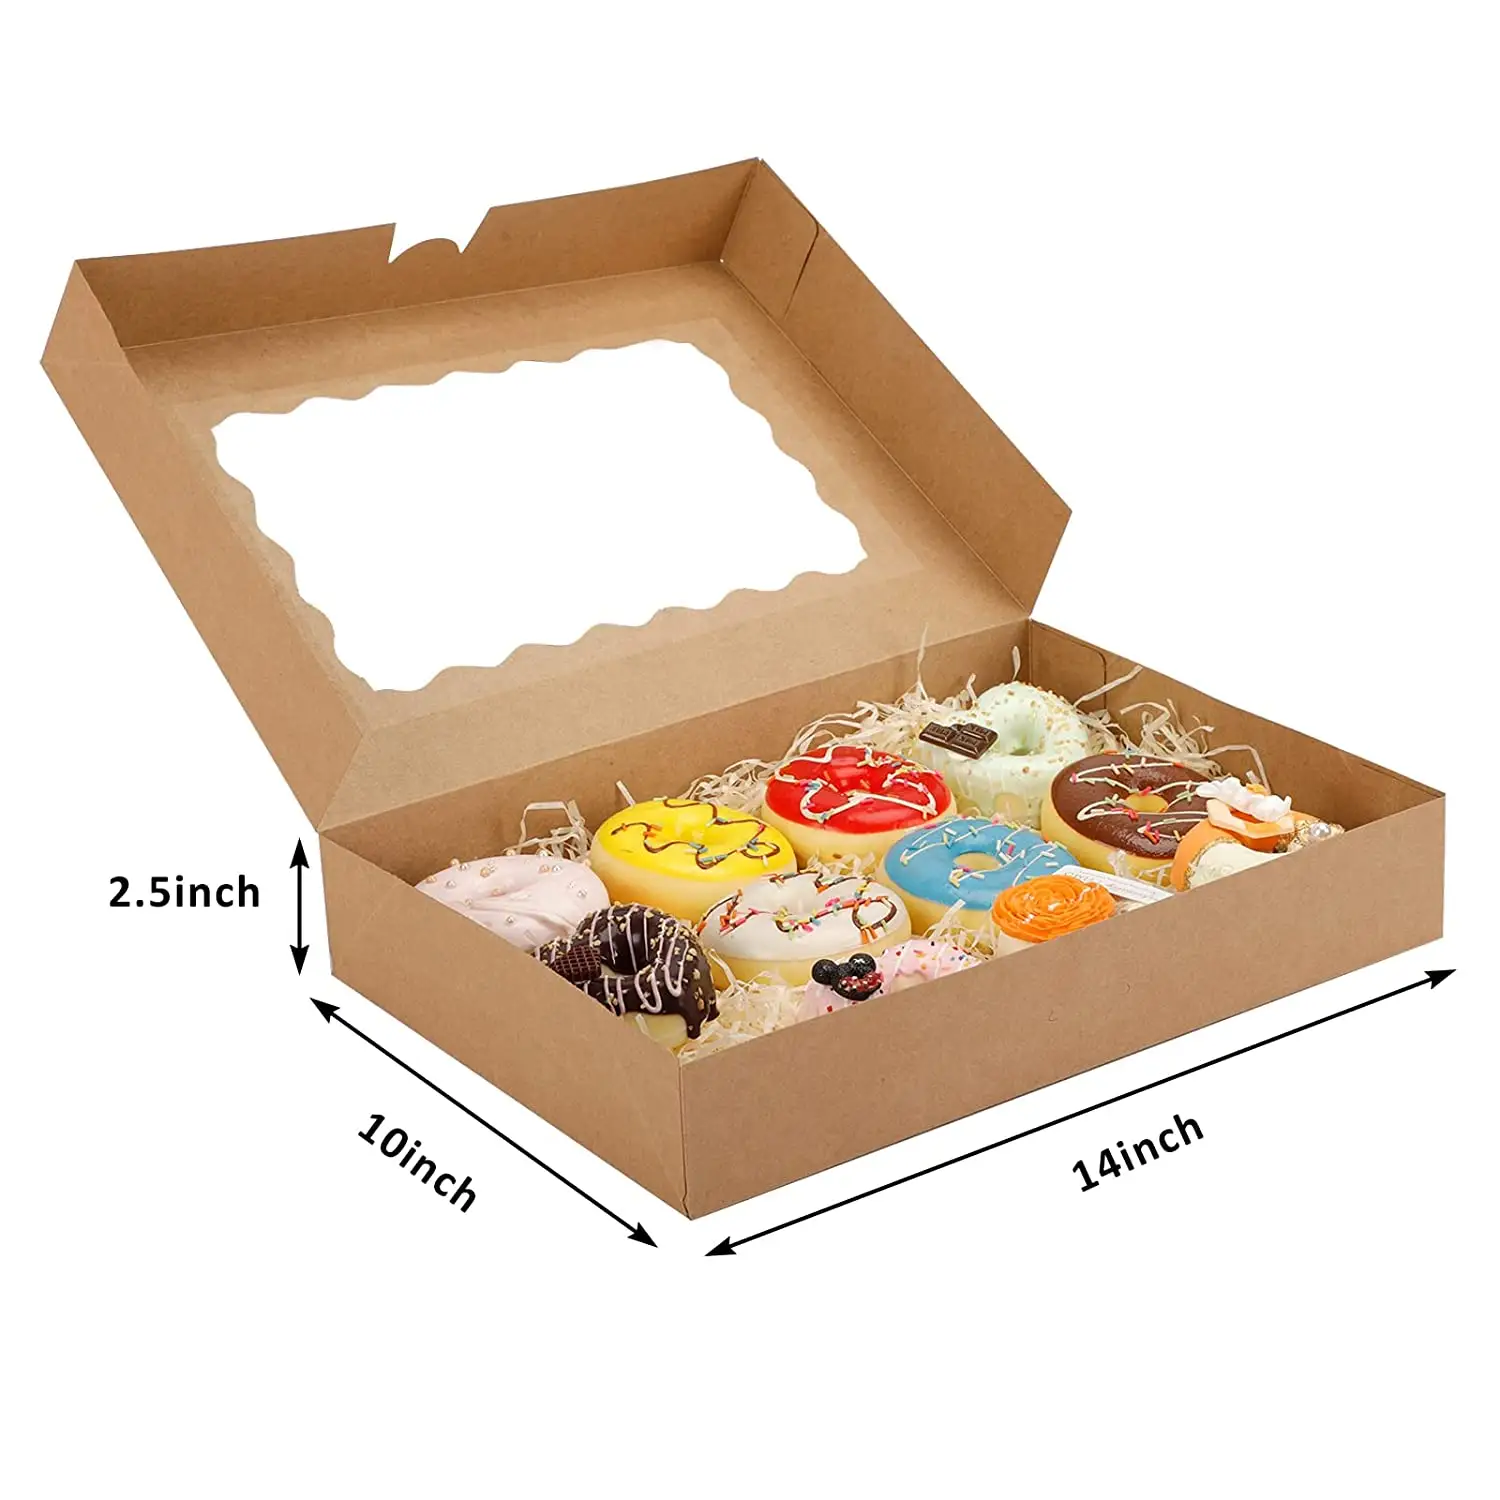 Back boxen 14-Zoll-Keksdosen mit Fenster 14 "x 10" x 2,5 "Brown Treat Boxes für Schokoladen erdbeeren, Donuts, Pies